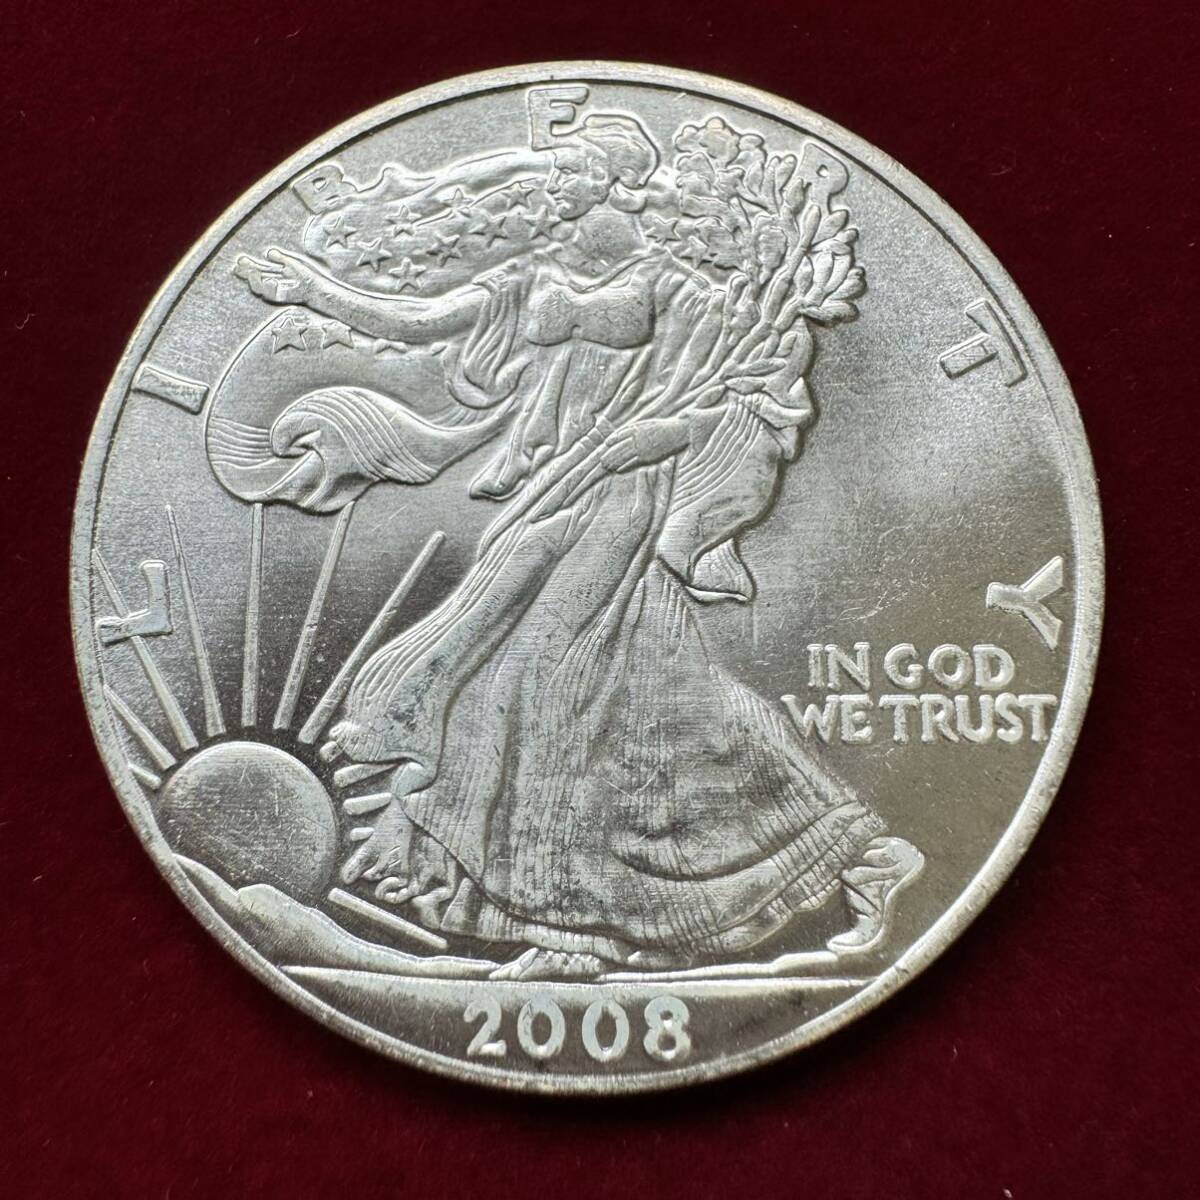 アメリカ 硬貨 古銭 ウォーキングリバティ 2008年 歩く自由の女神 13の星 イーグル 盾 記念幣 コイン の画像1